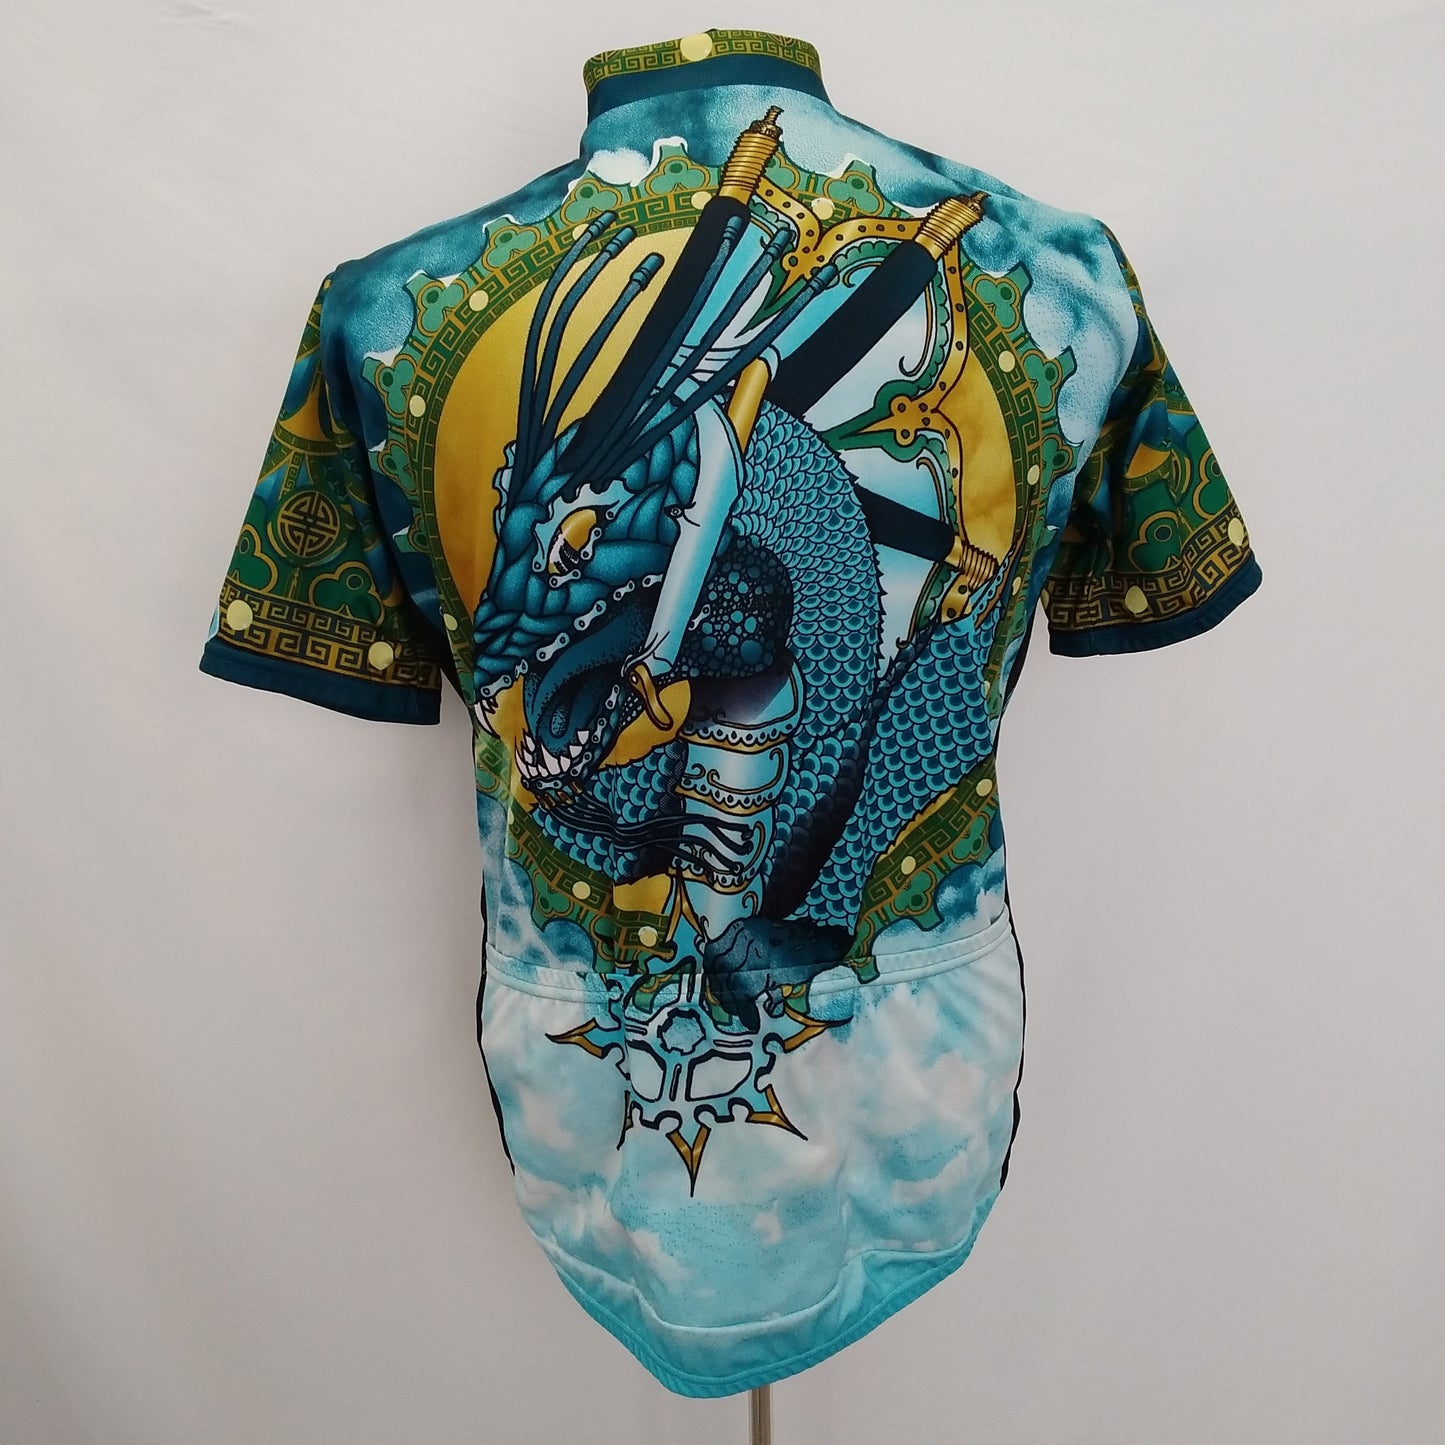 Primal Wear Blue Dragon 3/4 Zip Short Sleeve Cycling Jersey - Men’s L